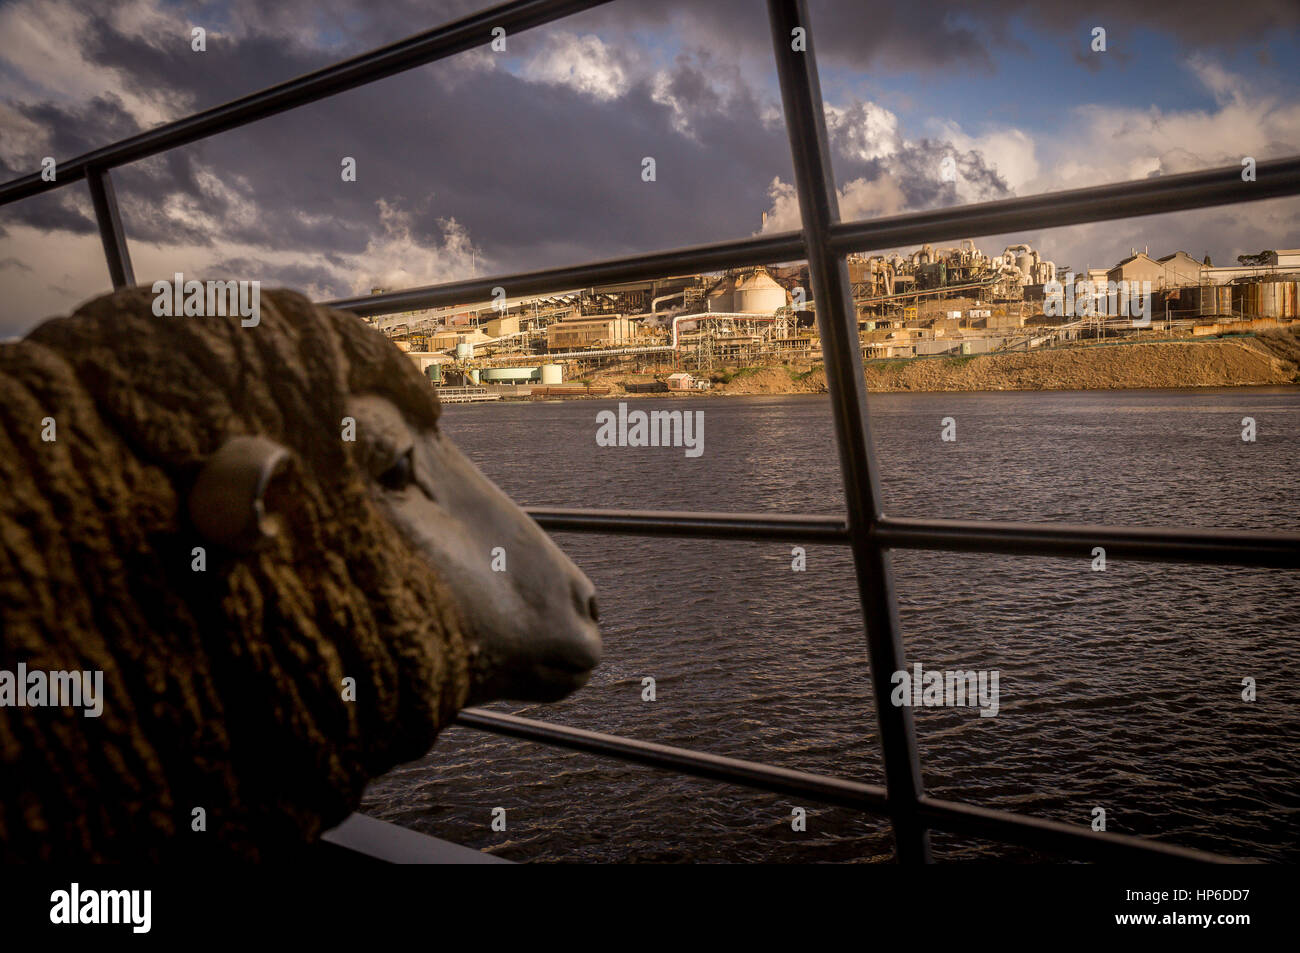 Schaf-Statue betrachten Fabrik aus Fluss Stockfoto